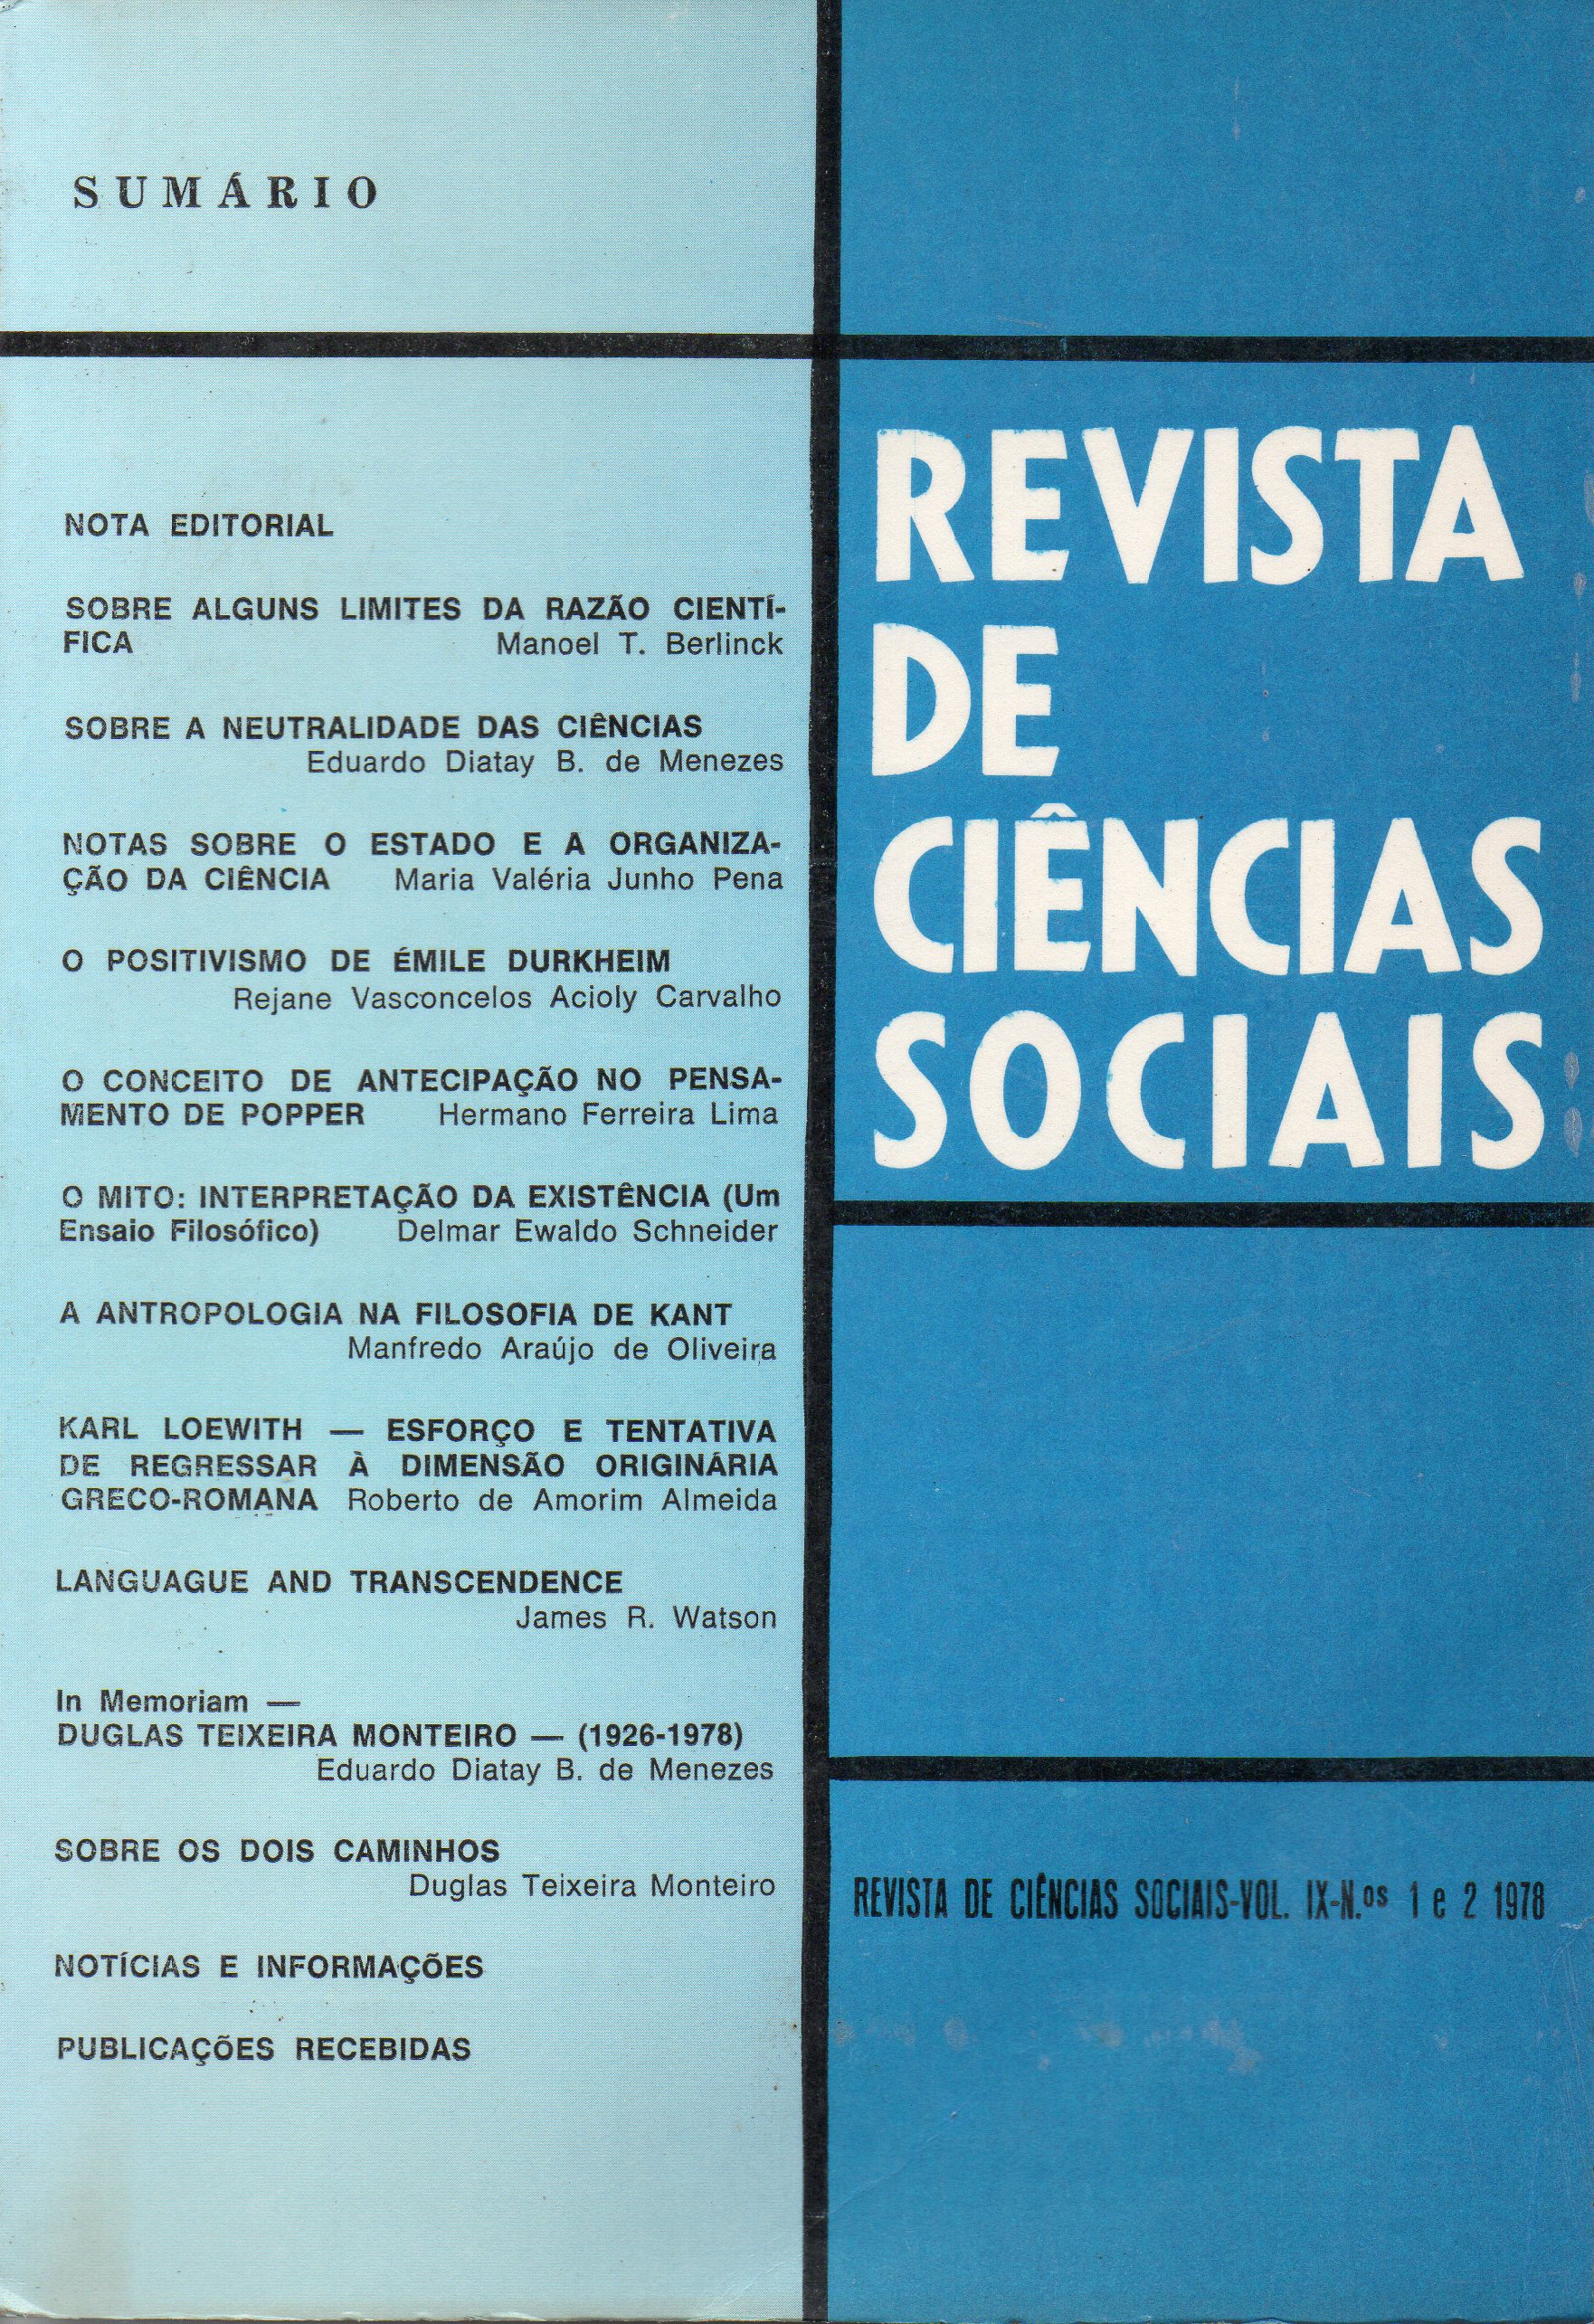 					View Vol. 9 No. 1 e 2 (1978): Ciência, Mito e Filosofia
				